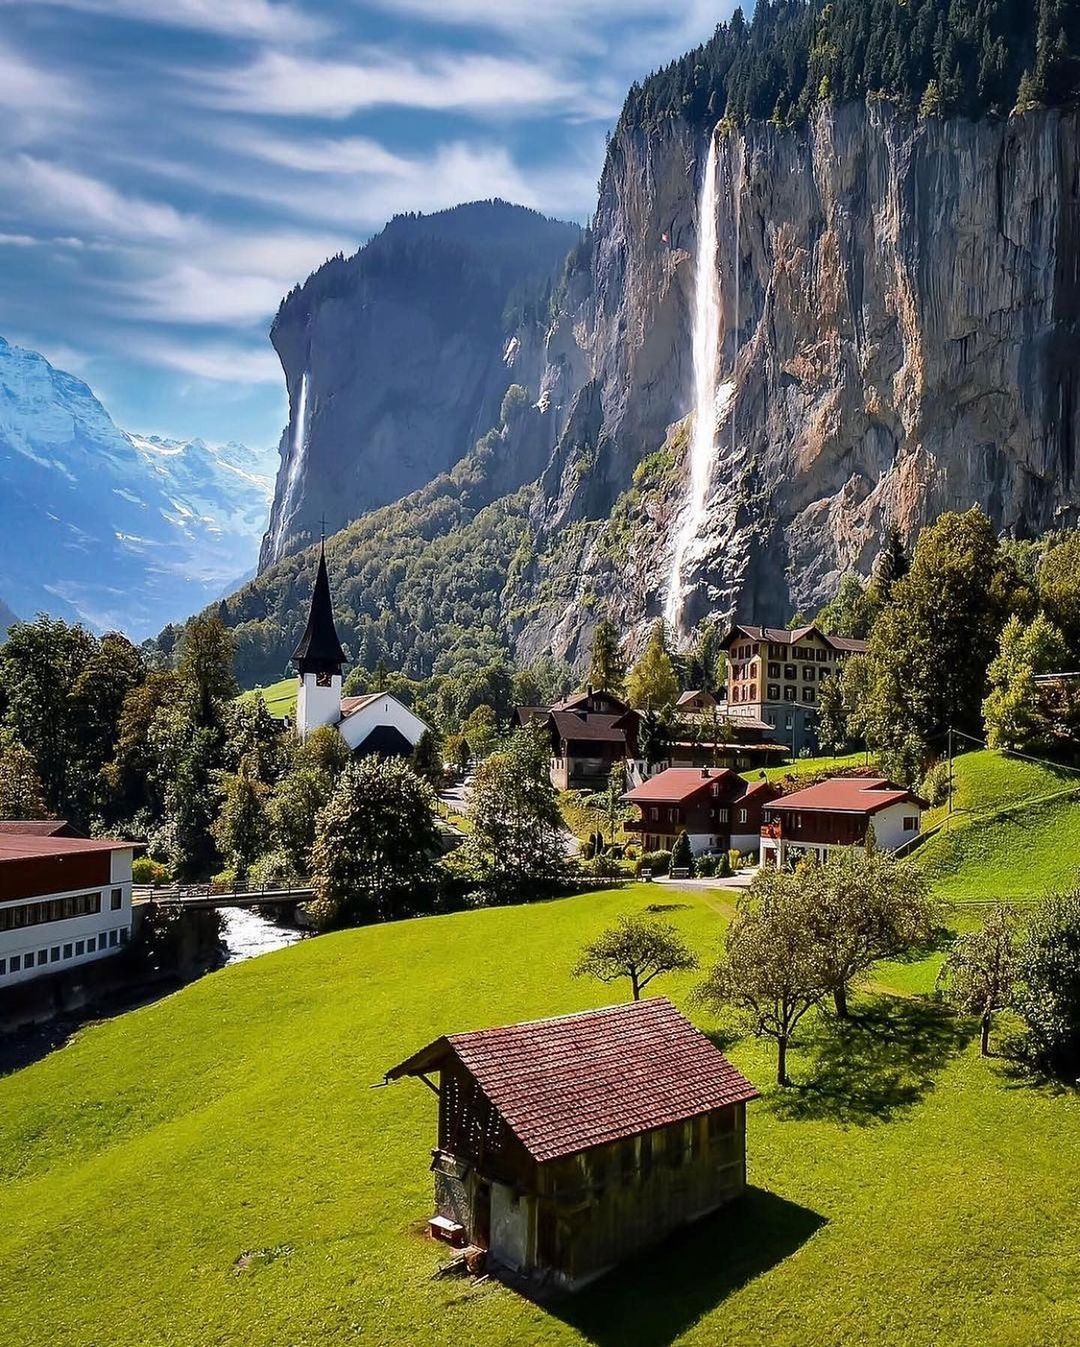 تصاویر رویایی از مناظر طبیعی سوئیس